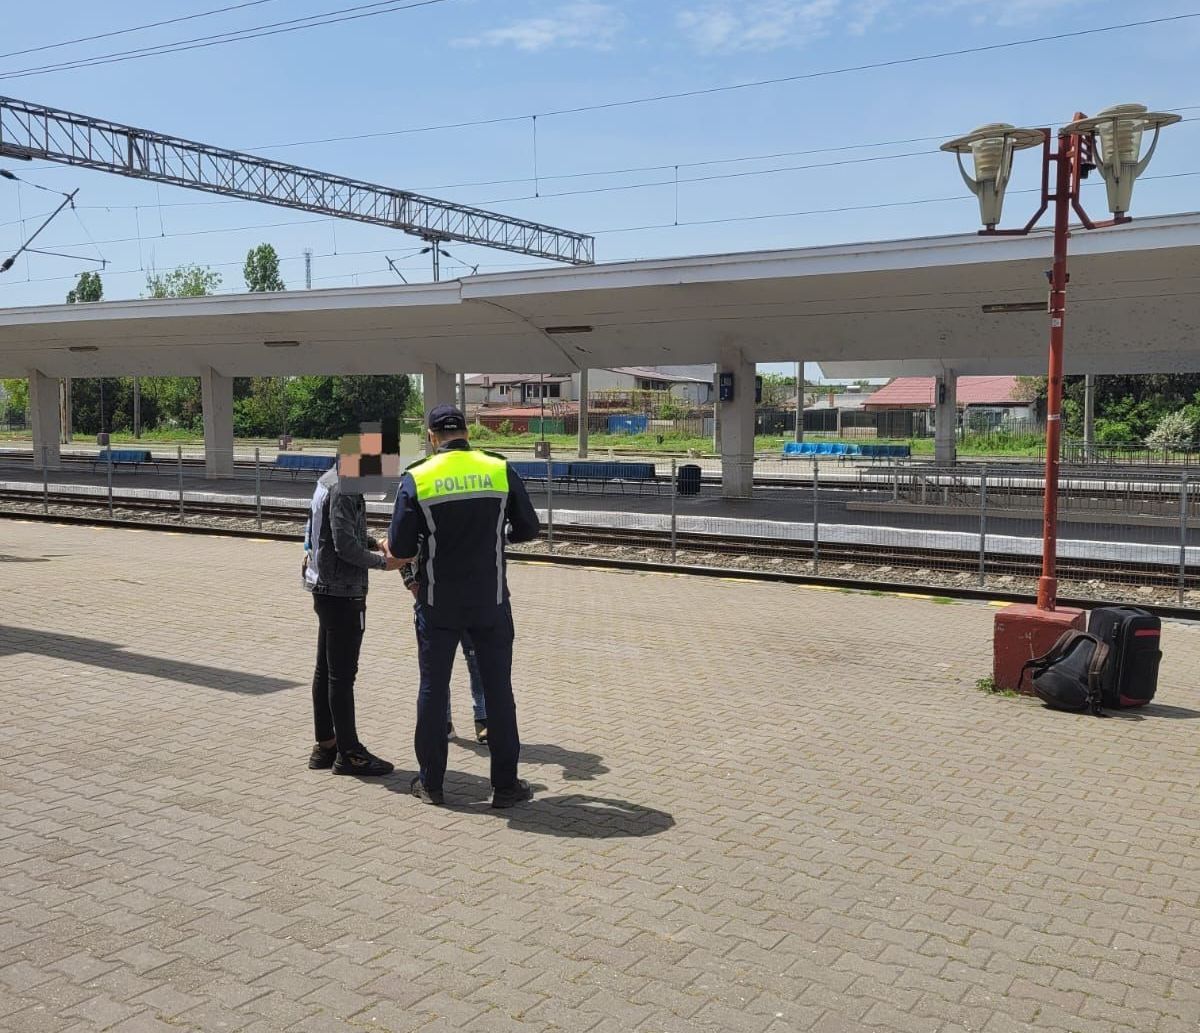 Activități preventive în Gara Constanța. Polițiștii au împărțit pliante cu mesajul: “Selfie-ul pe tren ia vieți, nu like-uri!” - gara-3-1684245614.jpg